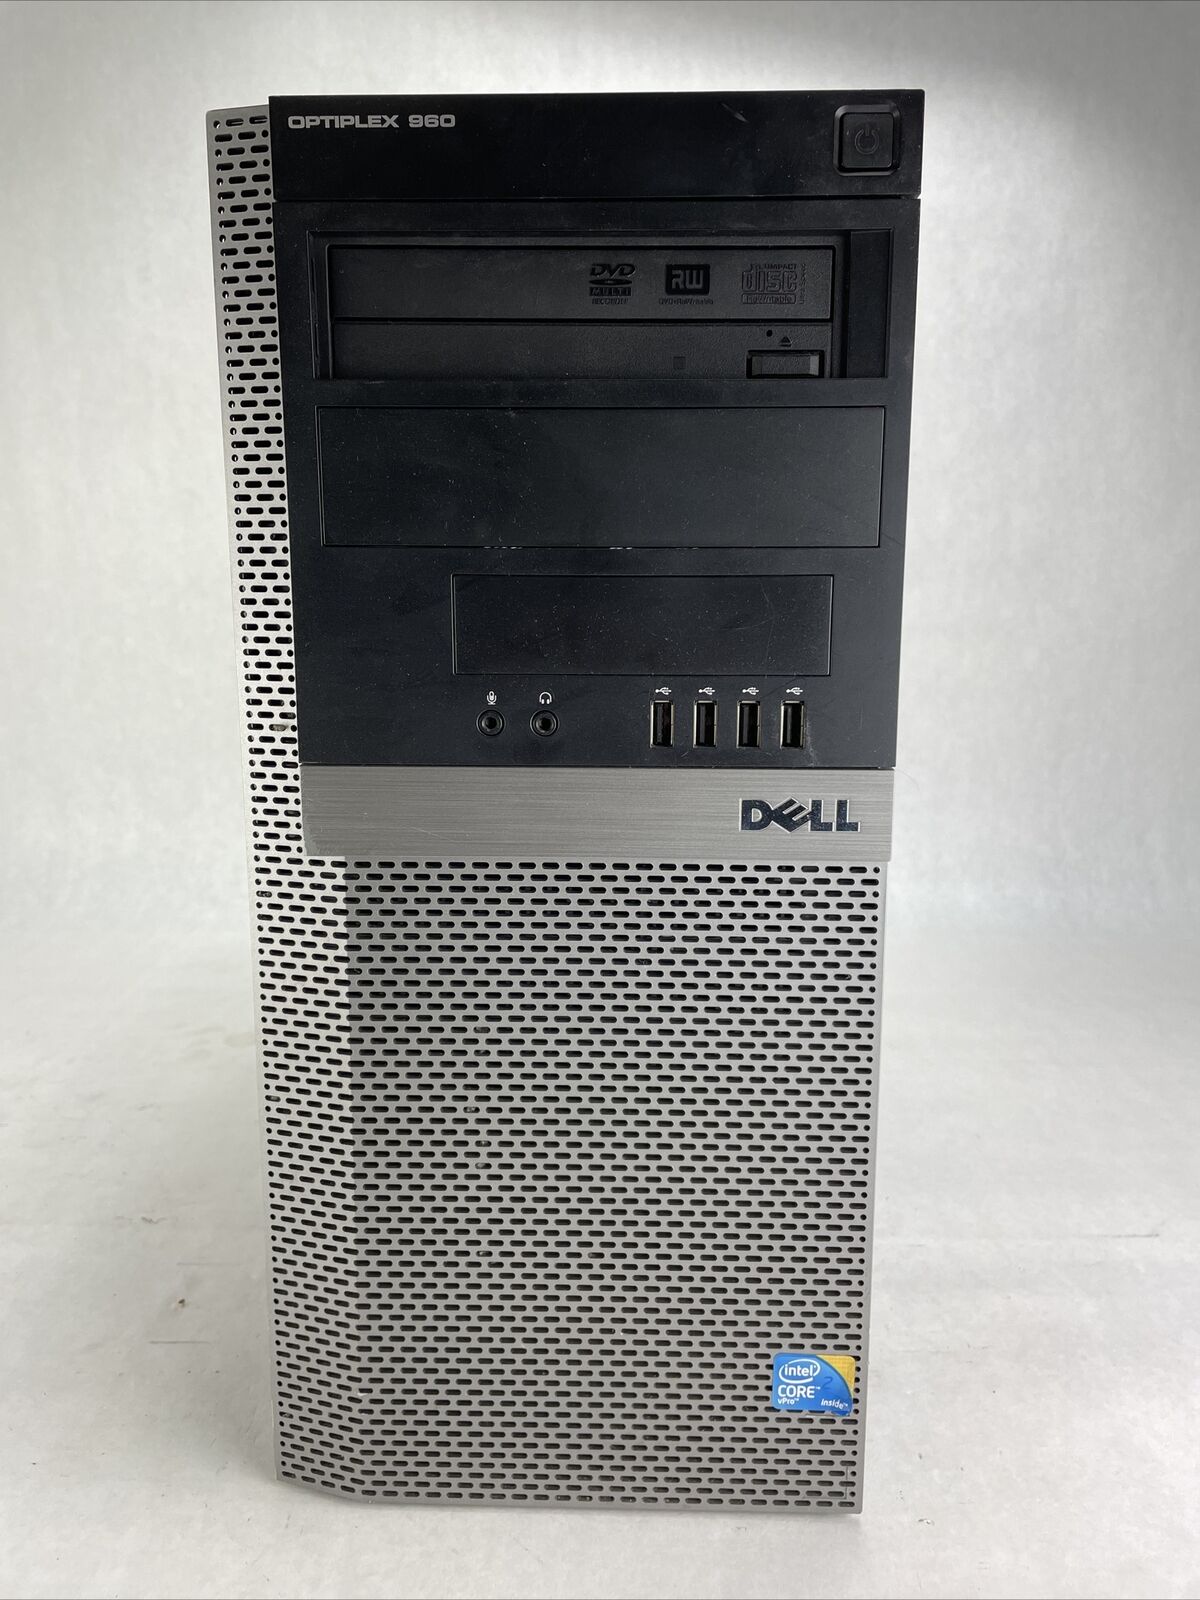 Dell Optiplex 960 MT Intel Core 2 Duo E8500 3.16GHz 2GB RAM No HDD No OS